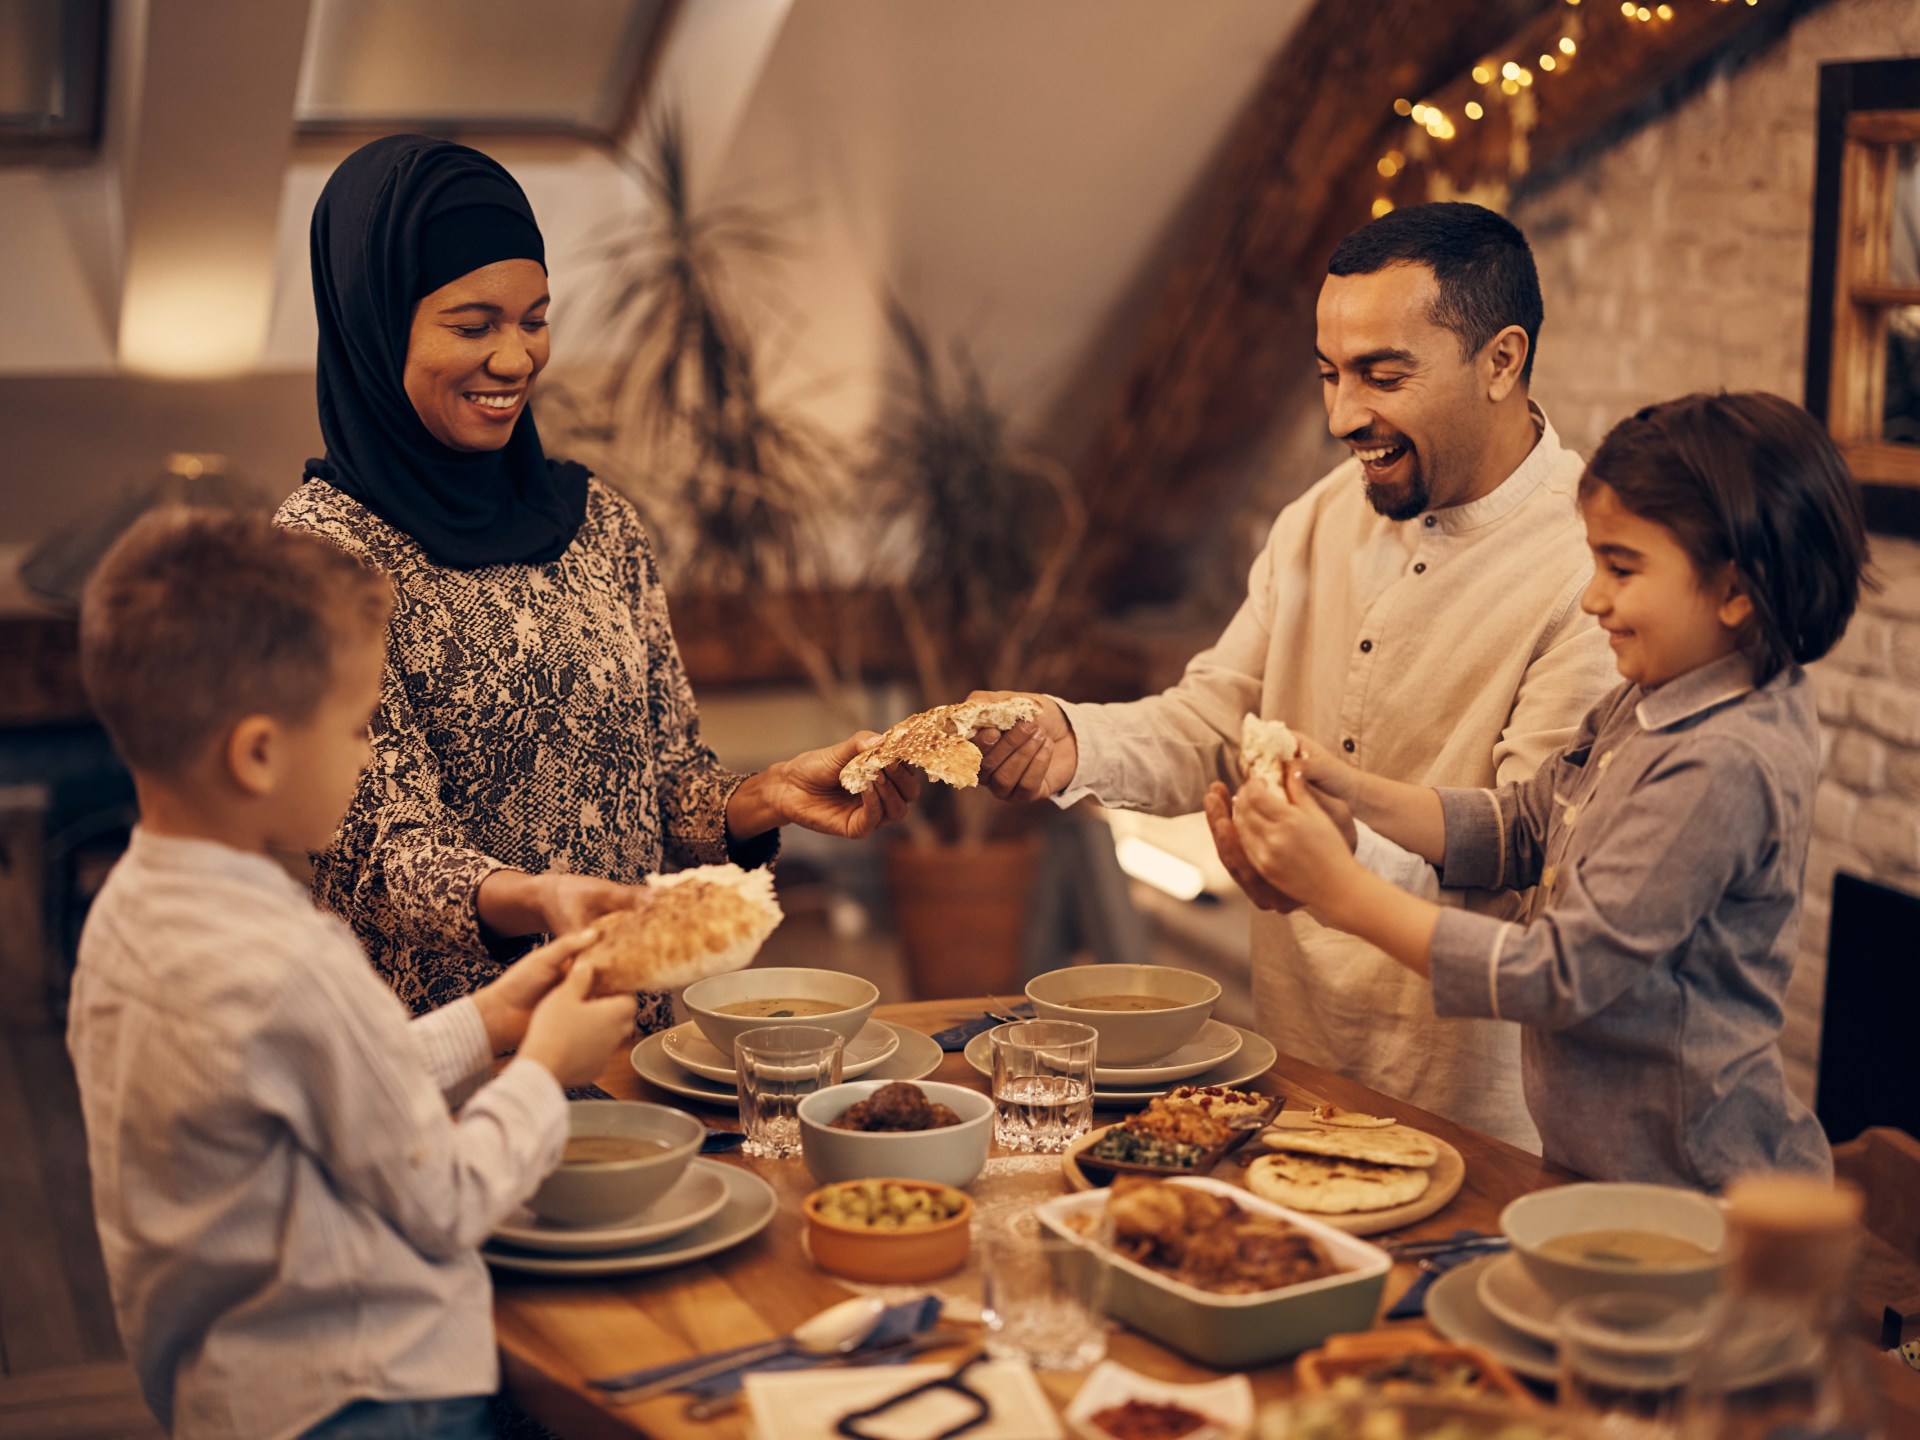 كم تبلغ تكلفة وجبة إفطار رمضان حول العالم؟ | أسلوب حياة – البوكس نيوز